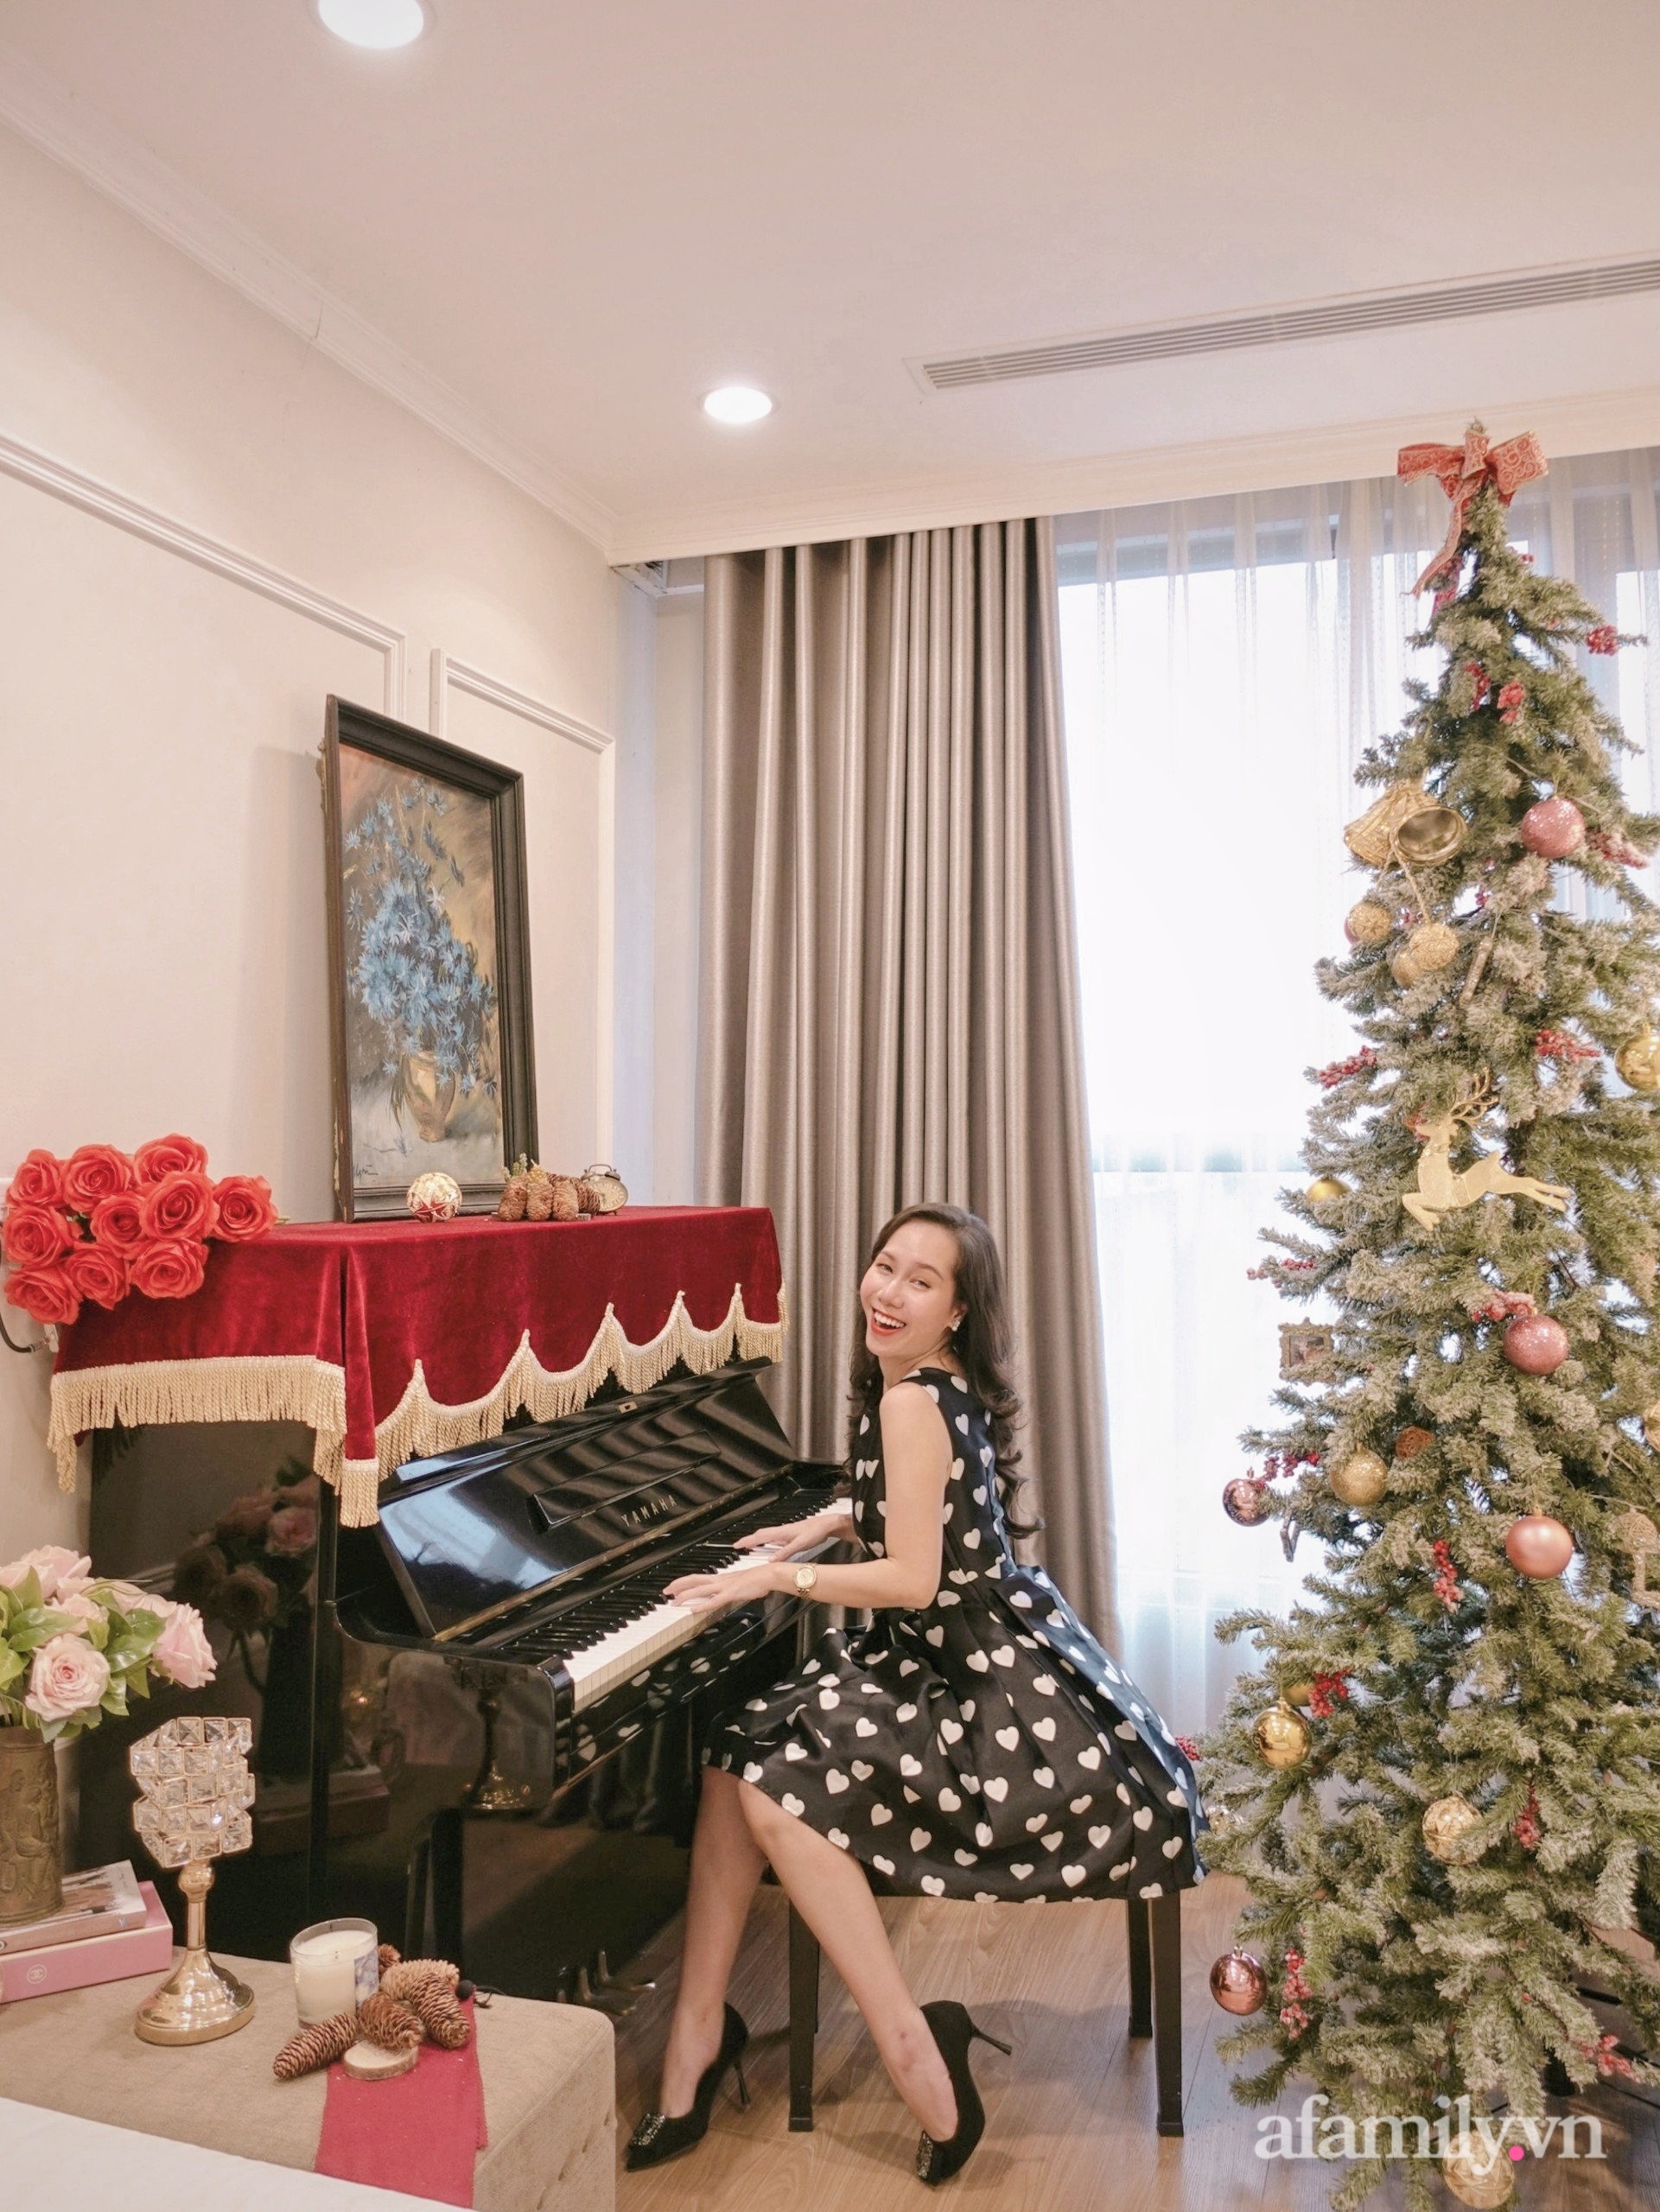 Cô gái Hà Thành tự mua đồ trang hoàng nhà cửa đẹp sang chảnh như trong tạp chí với chi phí 5 triệu đồng - Ảnh 2.